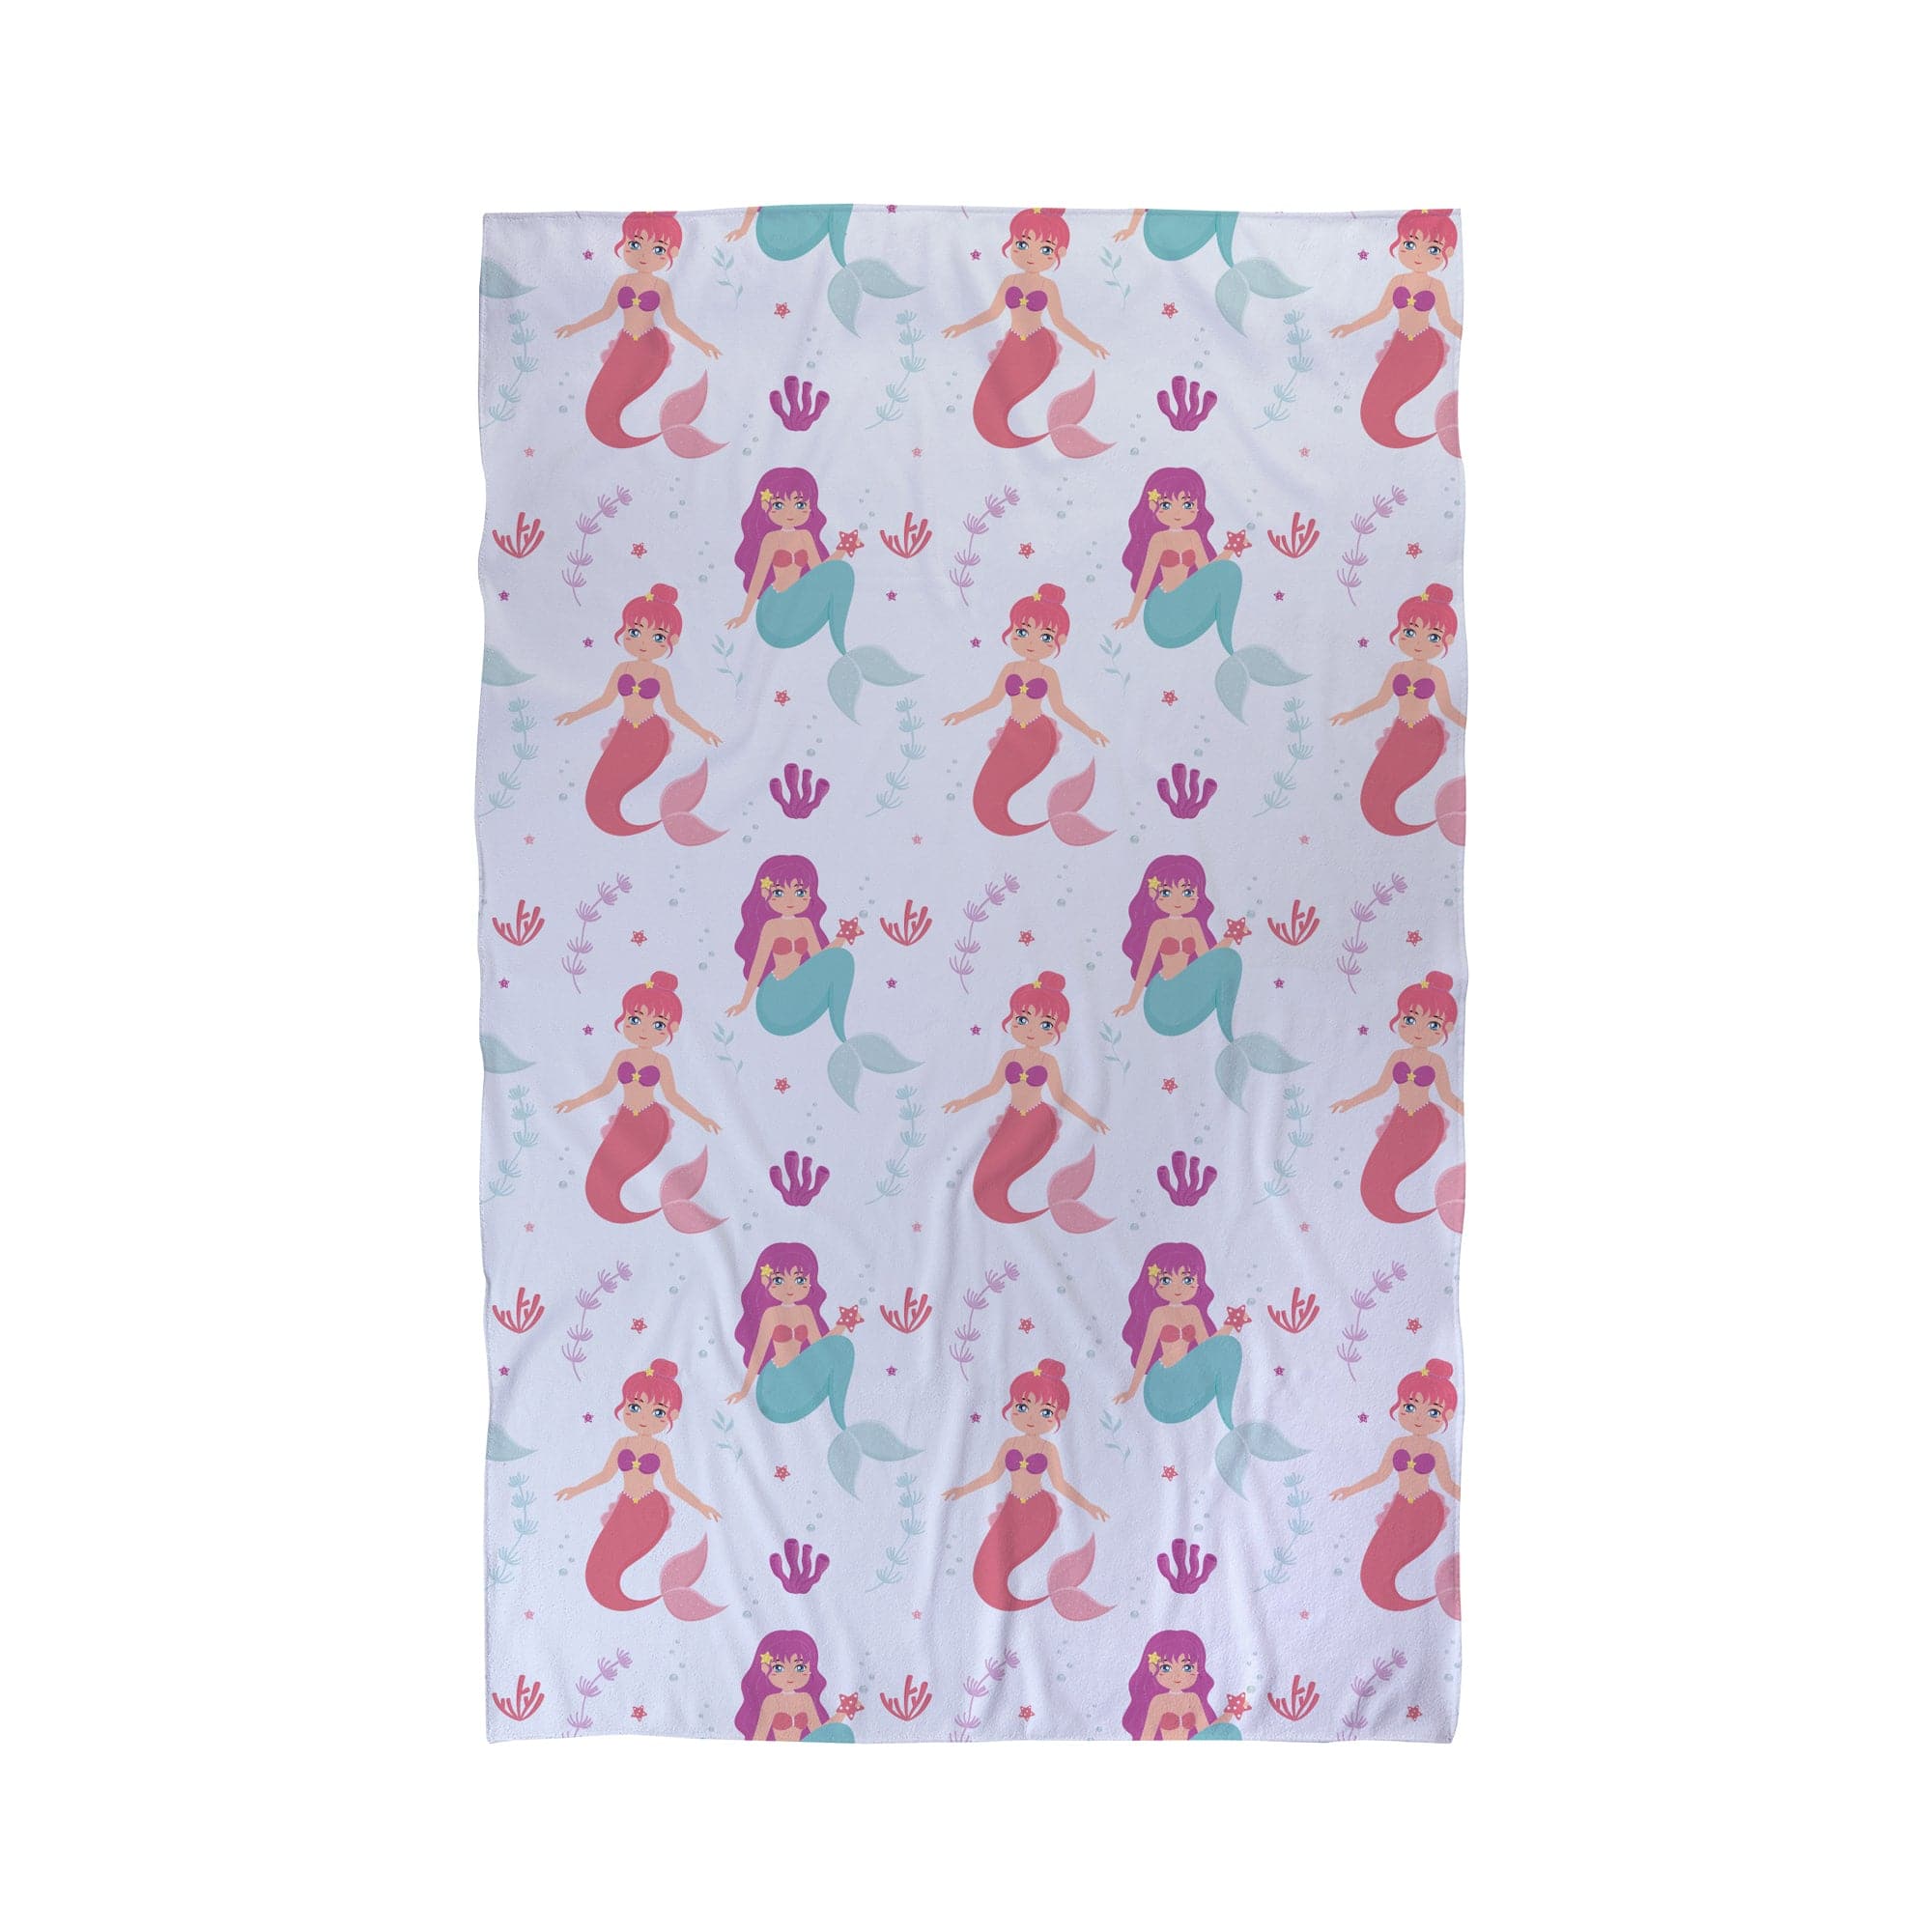 Mermaids - Personalised Beach Towel